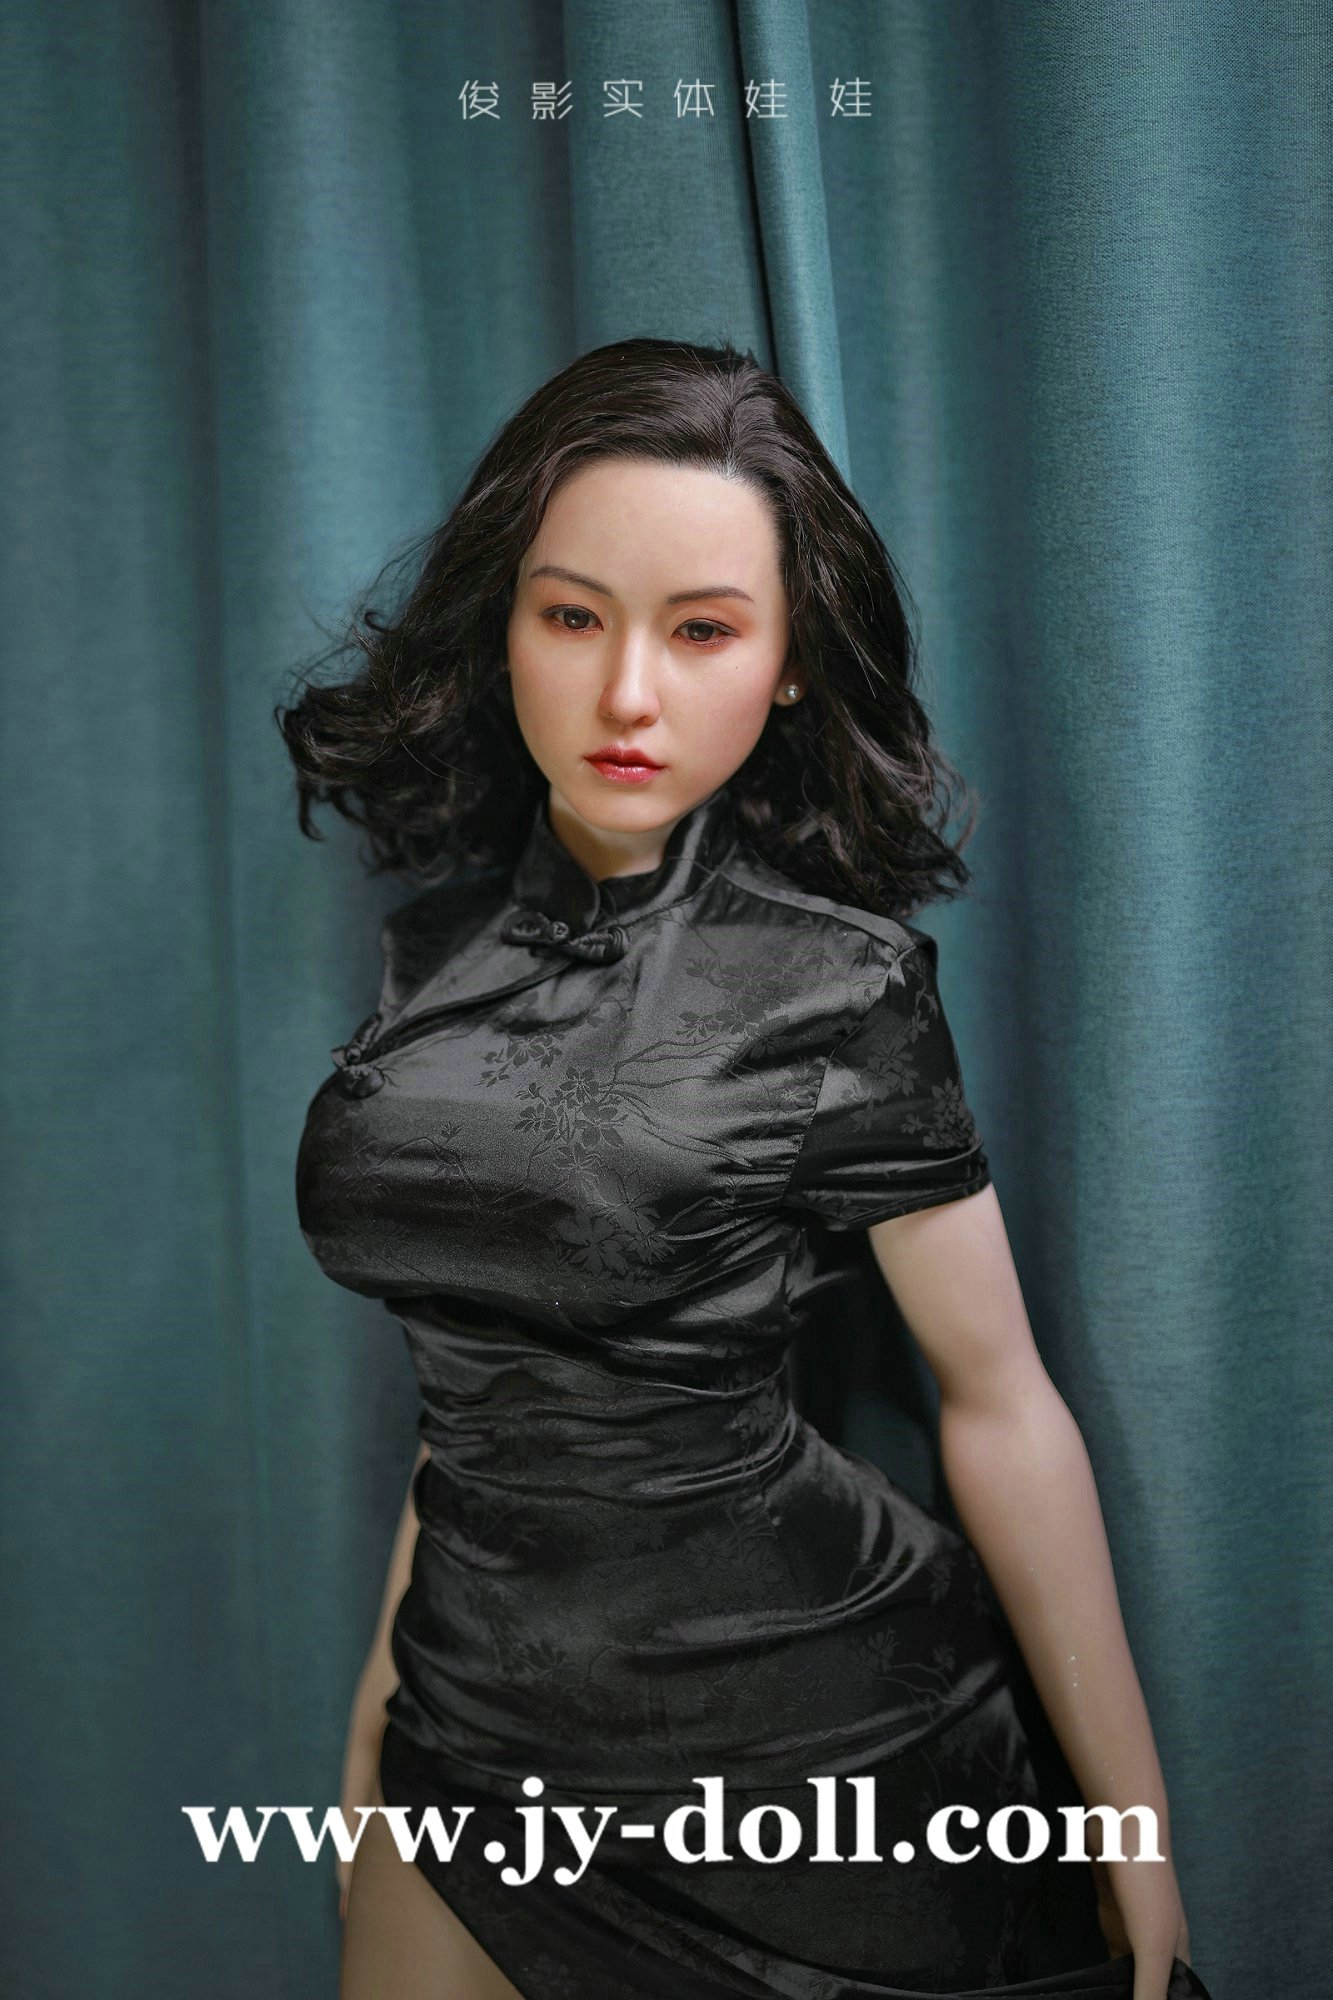 JY Doll 163cm full silicone doll Lian